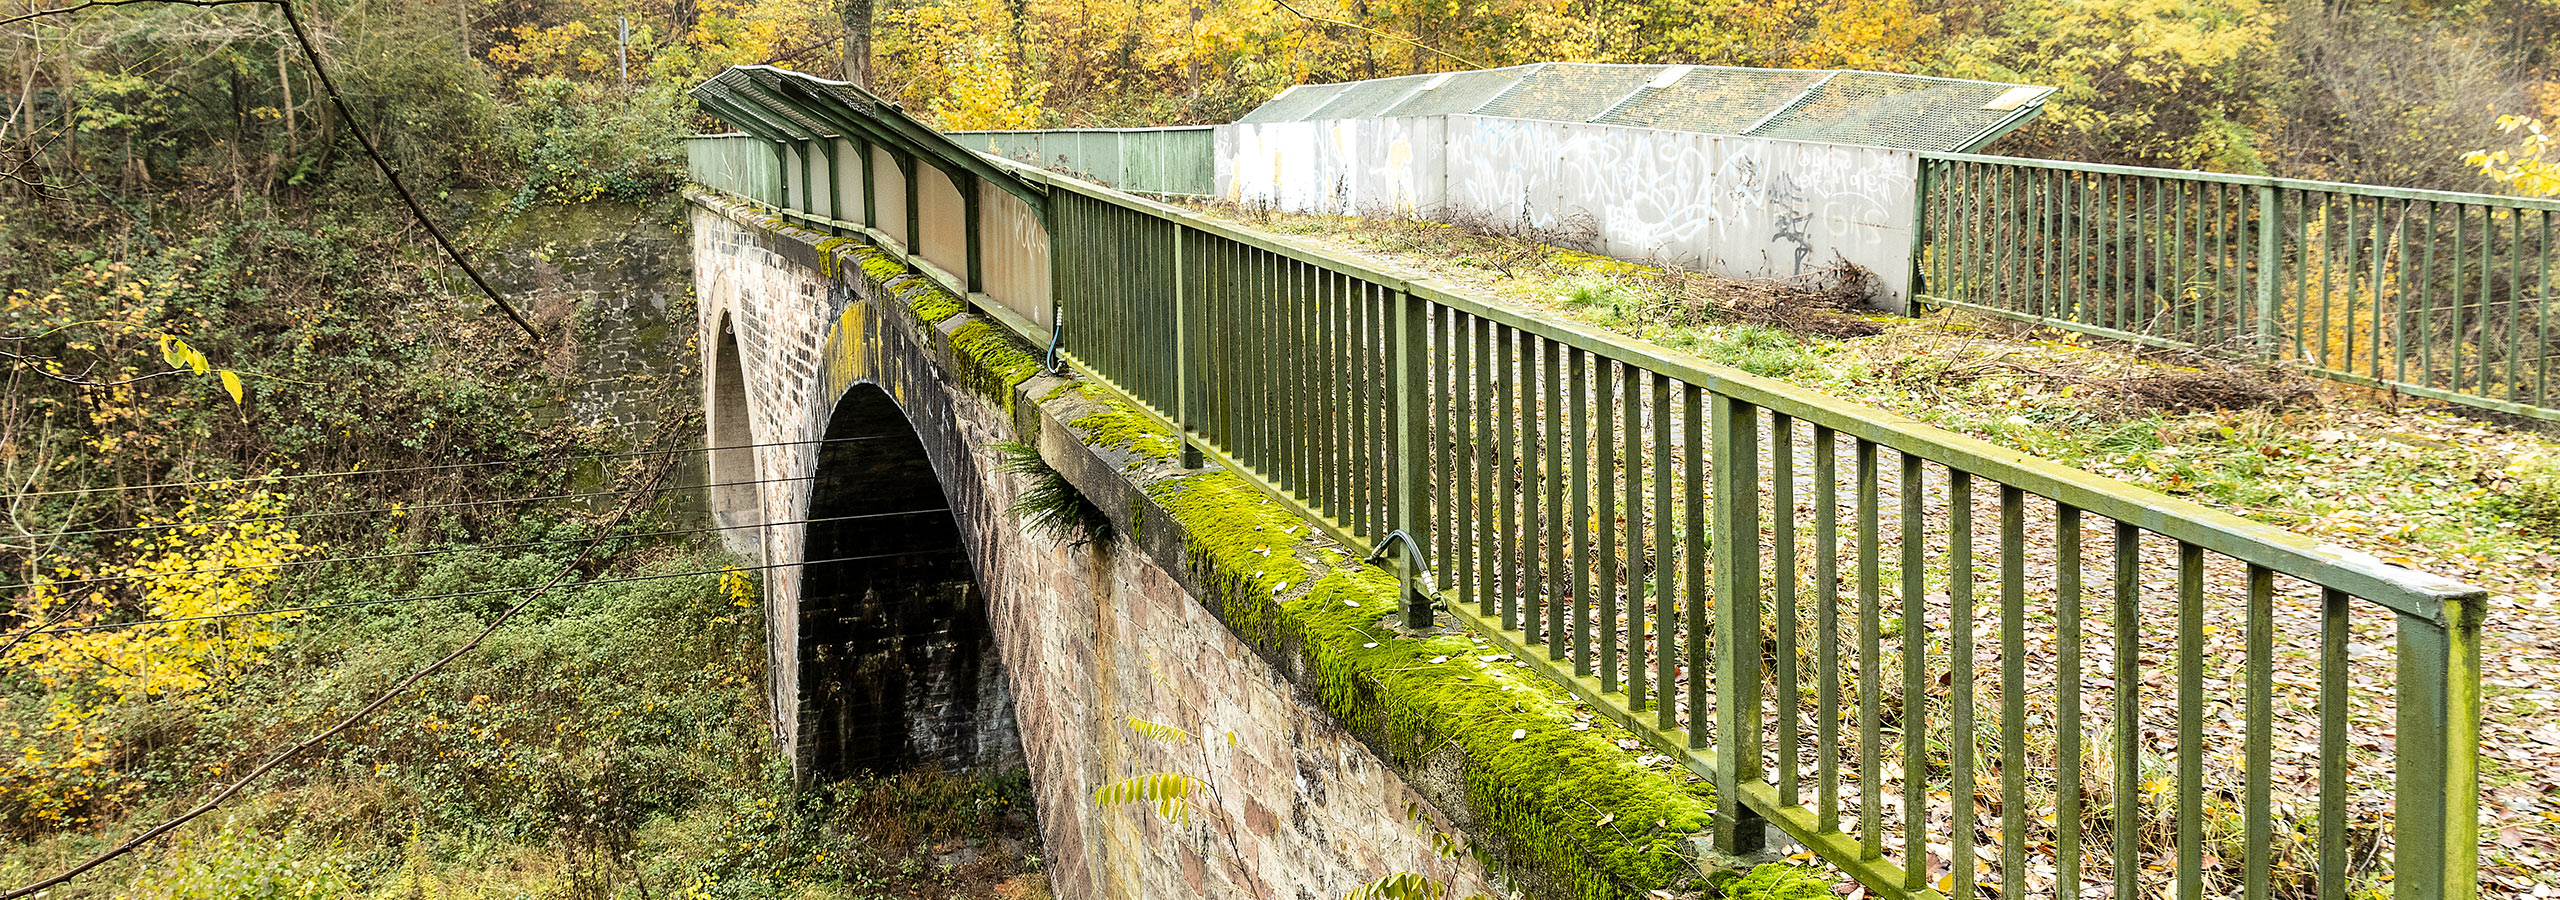 Hauptprüfung, Objektbezogene Schadensanalyse, Nachrechnung der Lehmbrücke in Saarbrücken